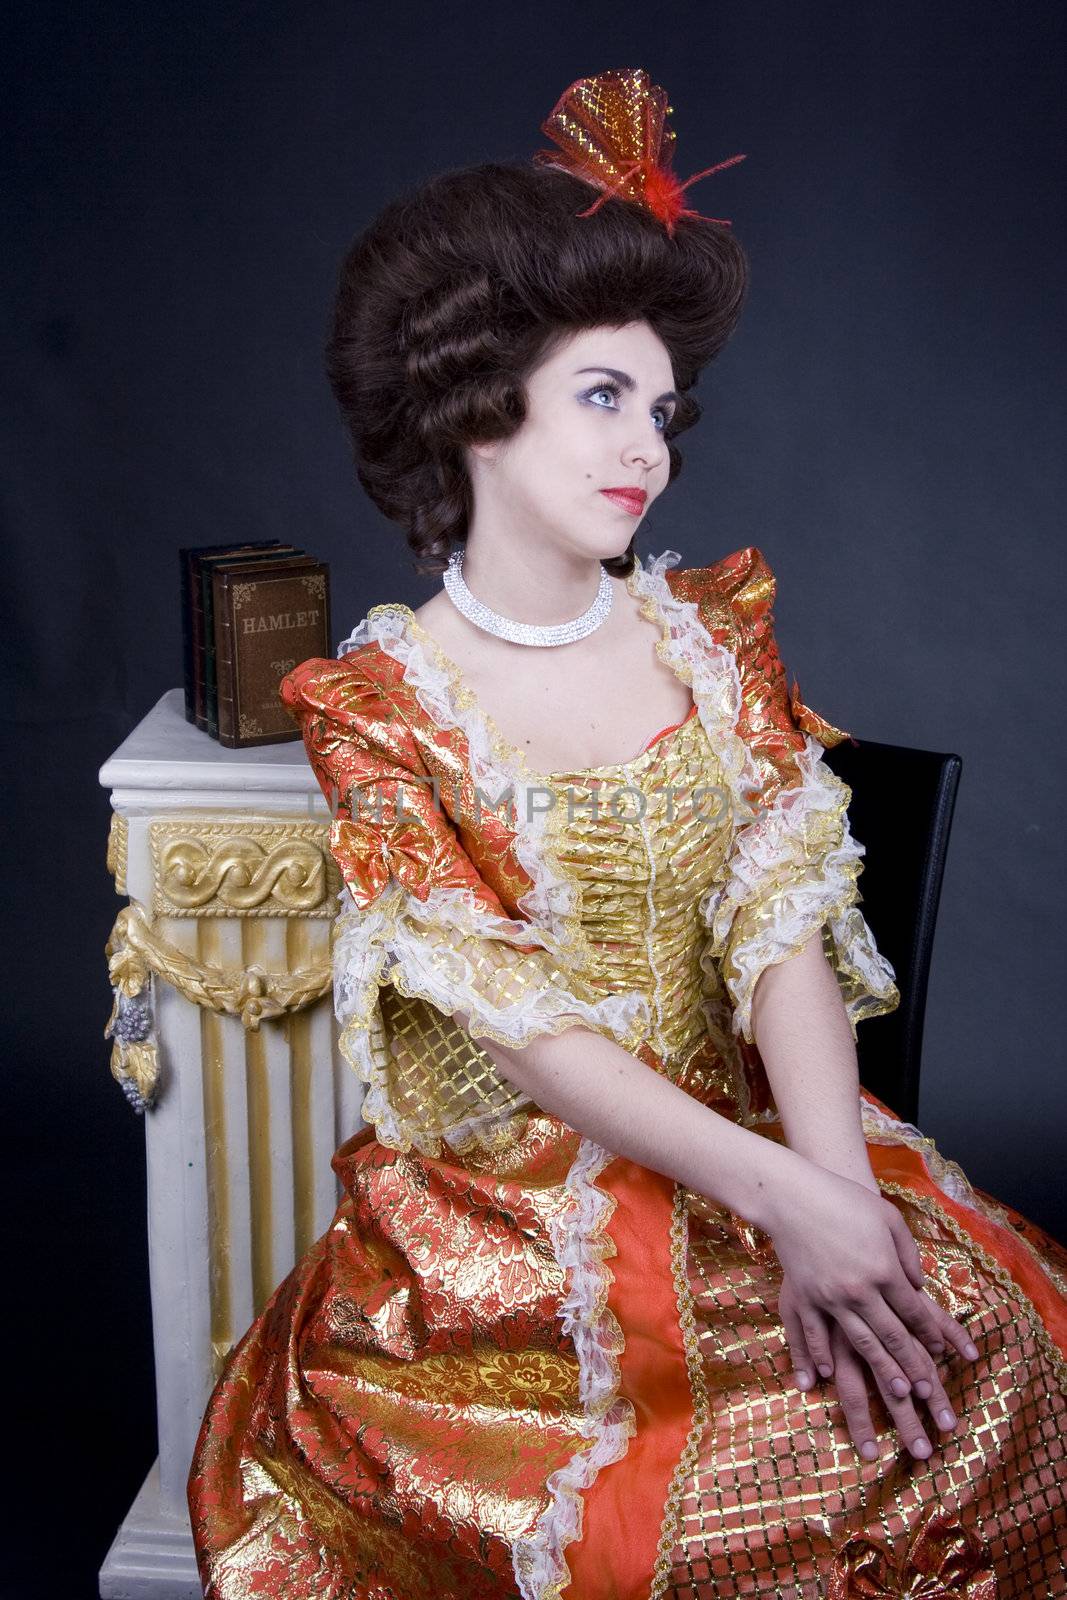 Elegant brunette from 18th century posing.